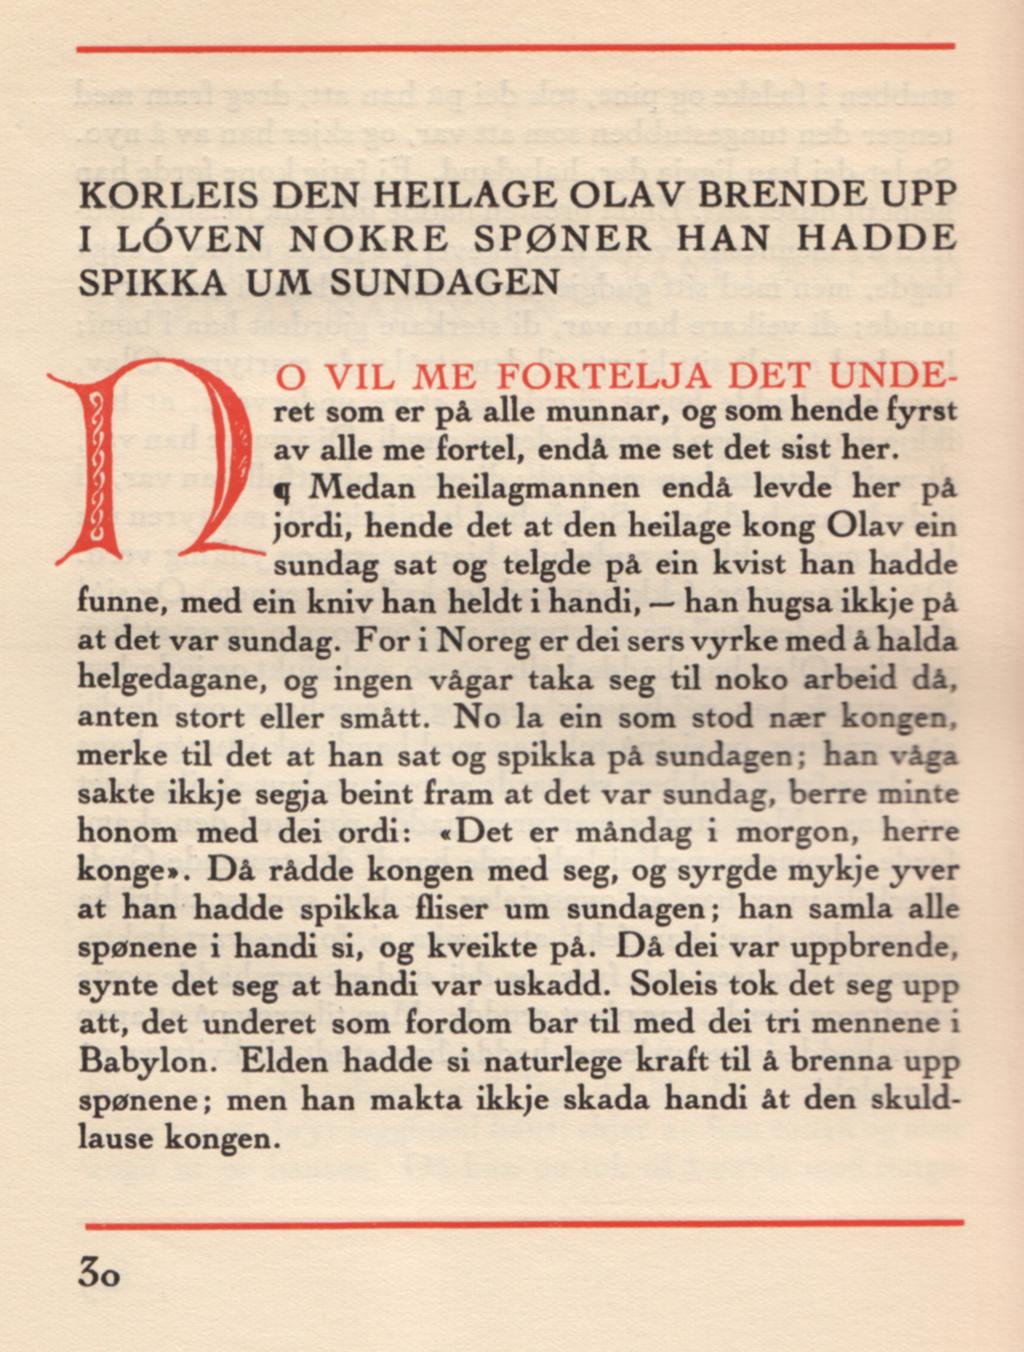 Frå omsetjinga av Passio Olavi ved Eiliv Skard (Oslo: Det Norske Samlaget, 1930).